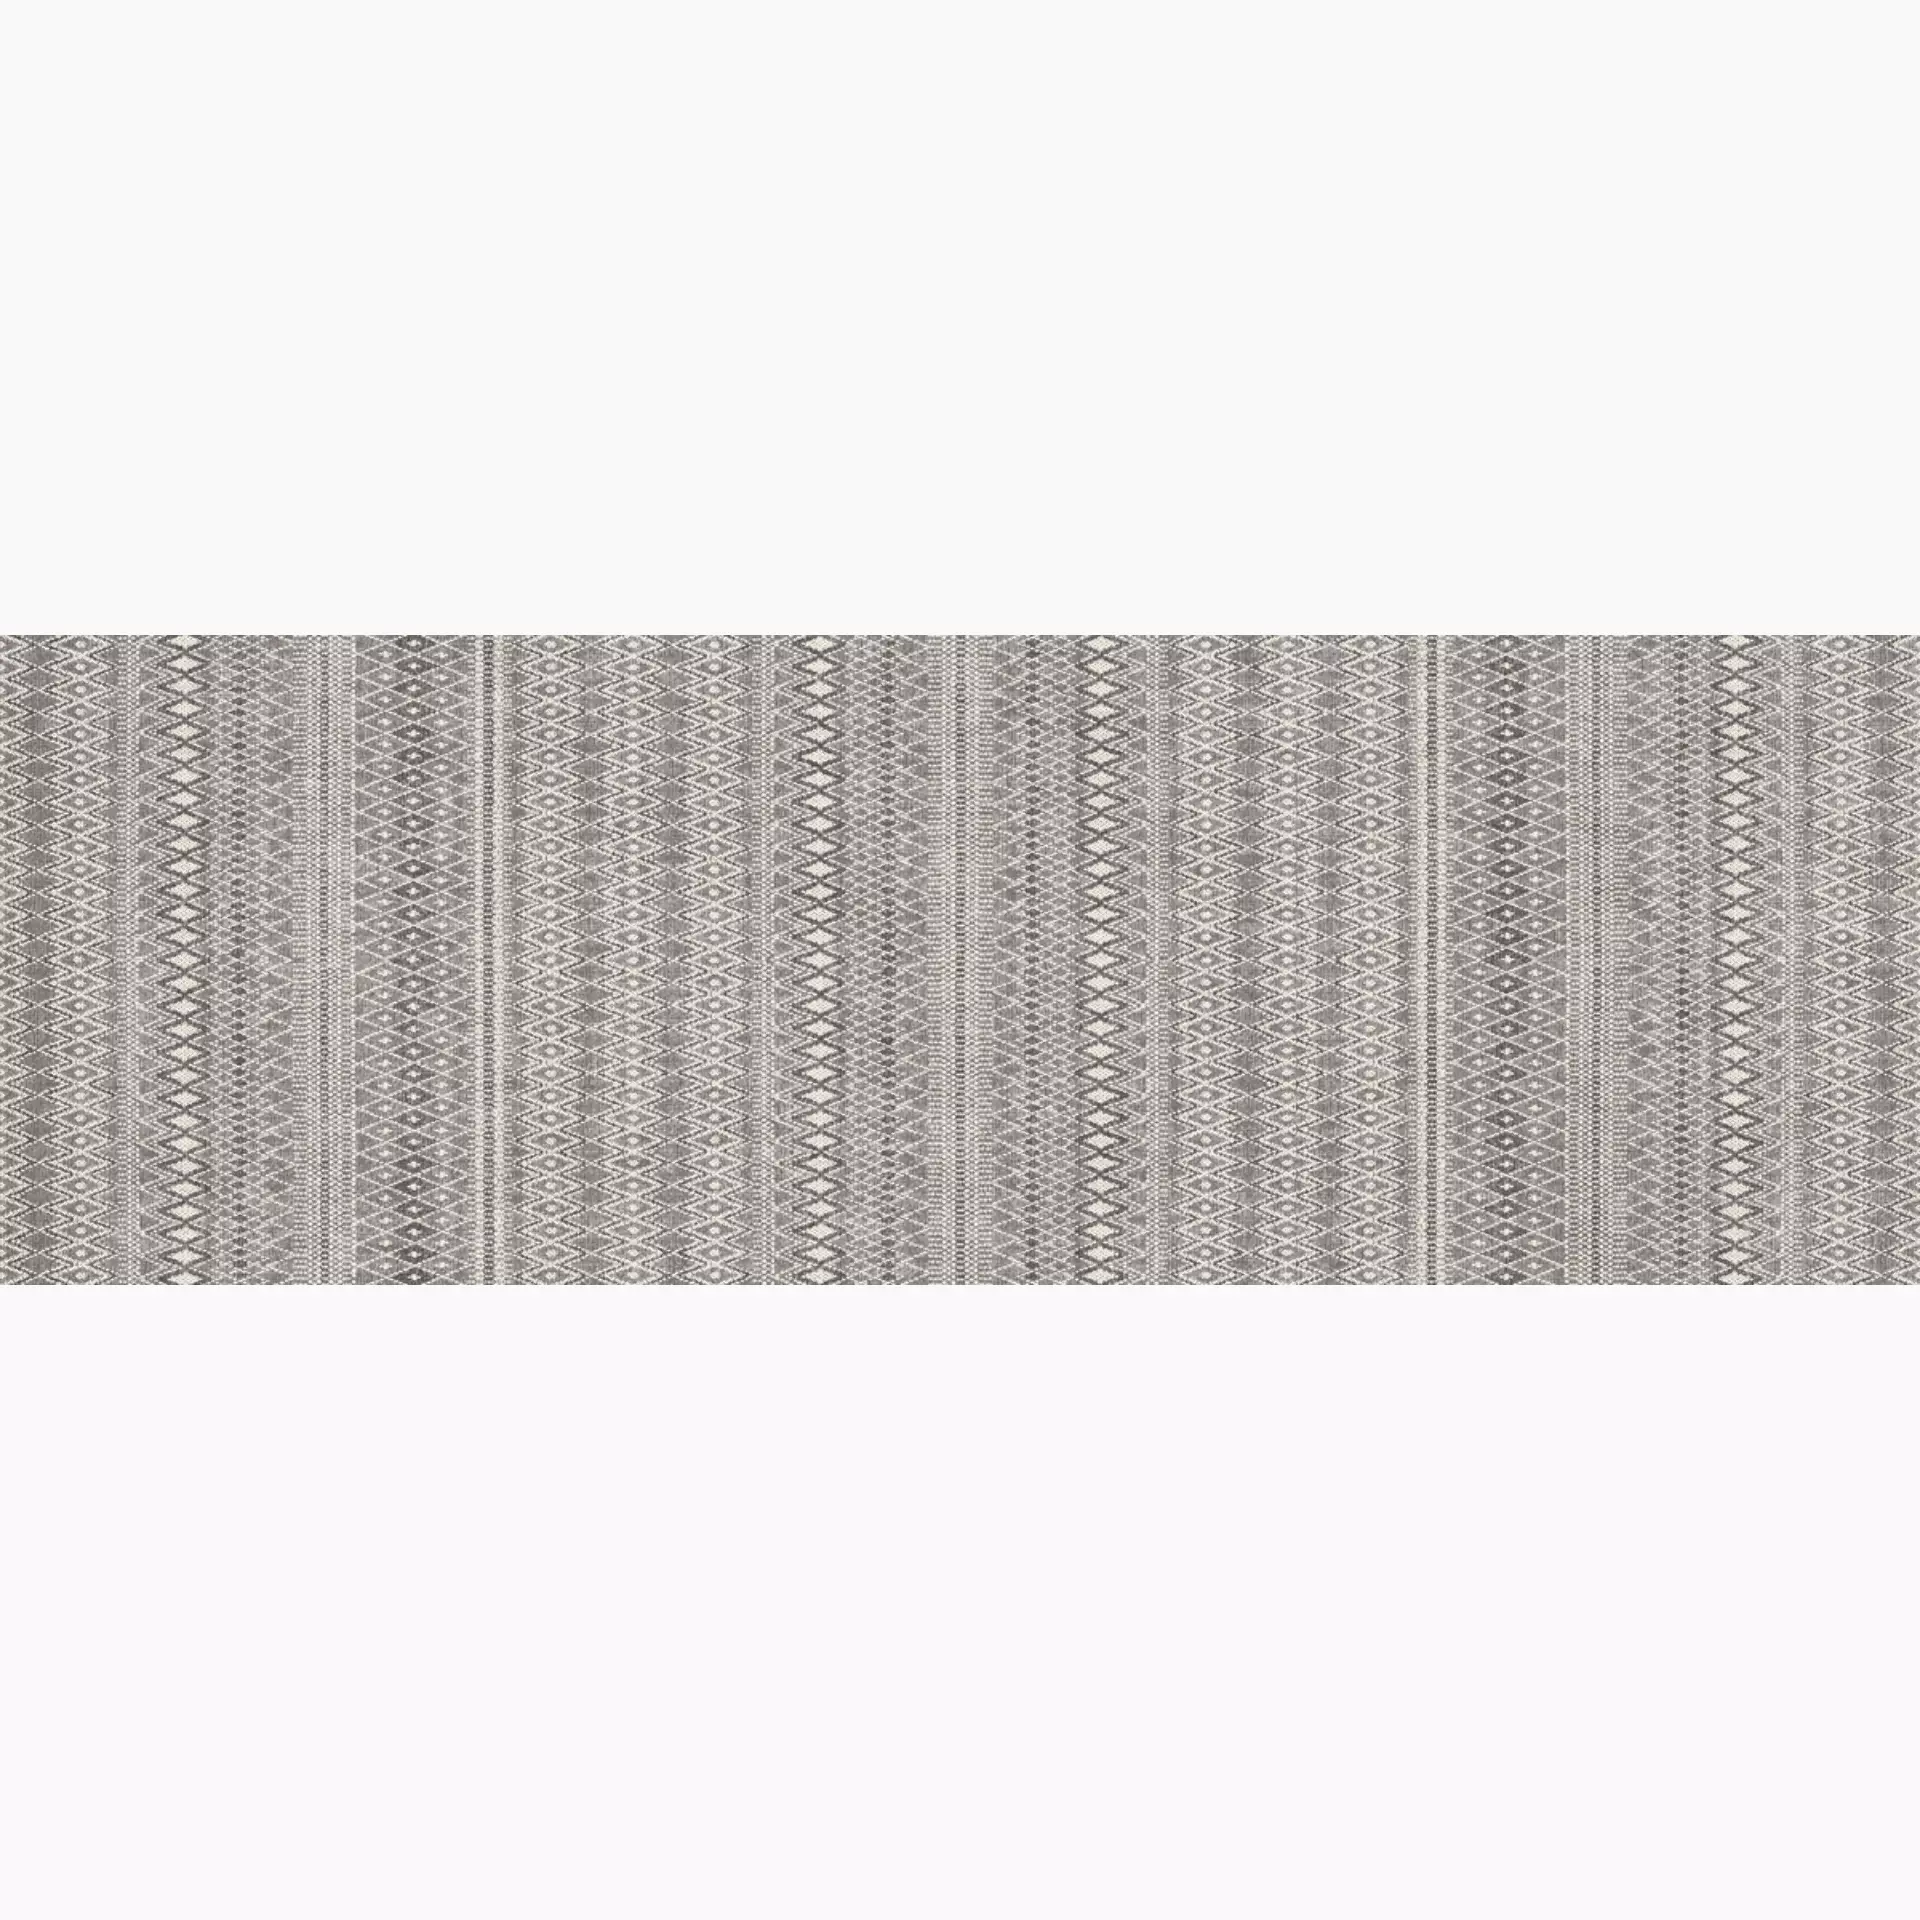 Wandfliese Marazzi Fabric Cotton Naturale – Matt Cotton ME1M matt natur 40x120cm Dekor Canvas 6mm